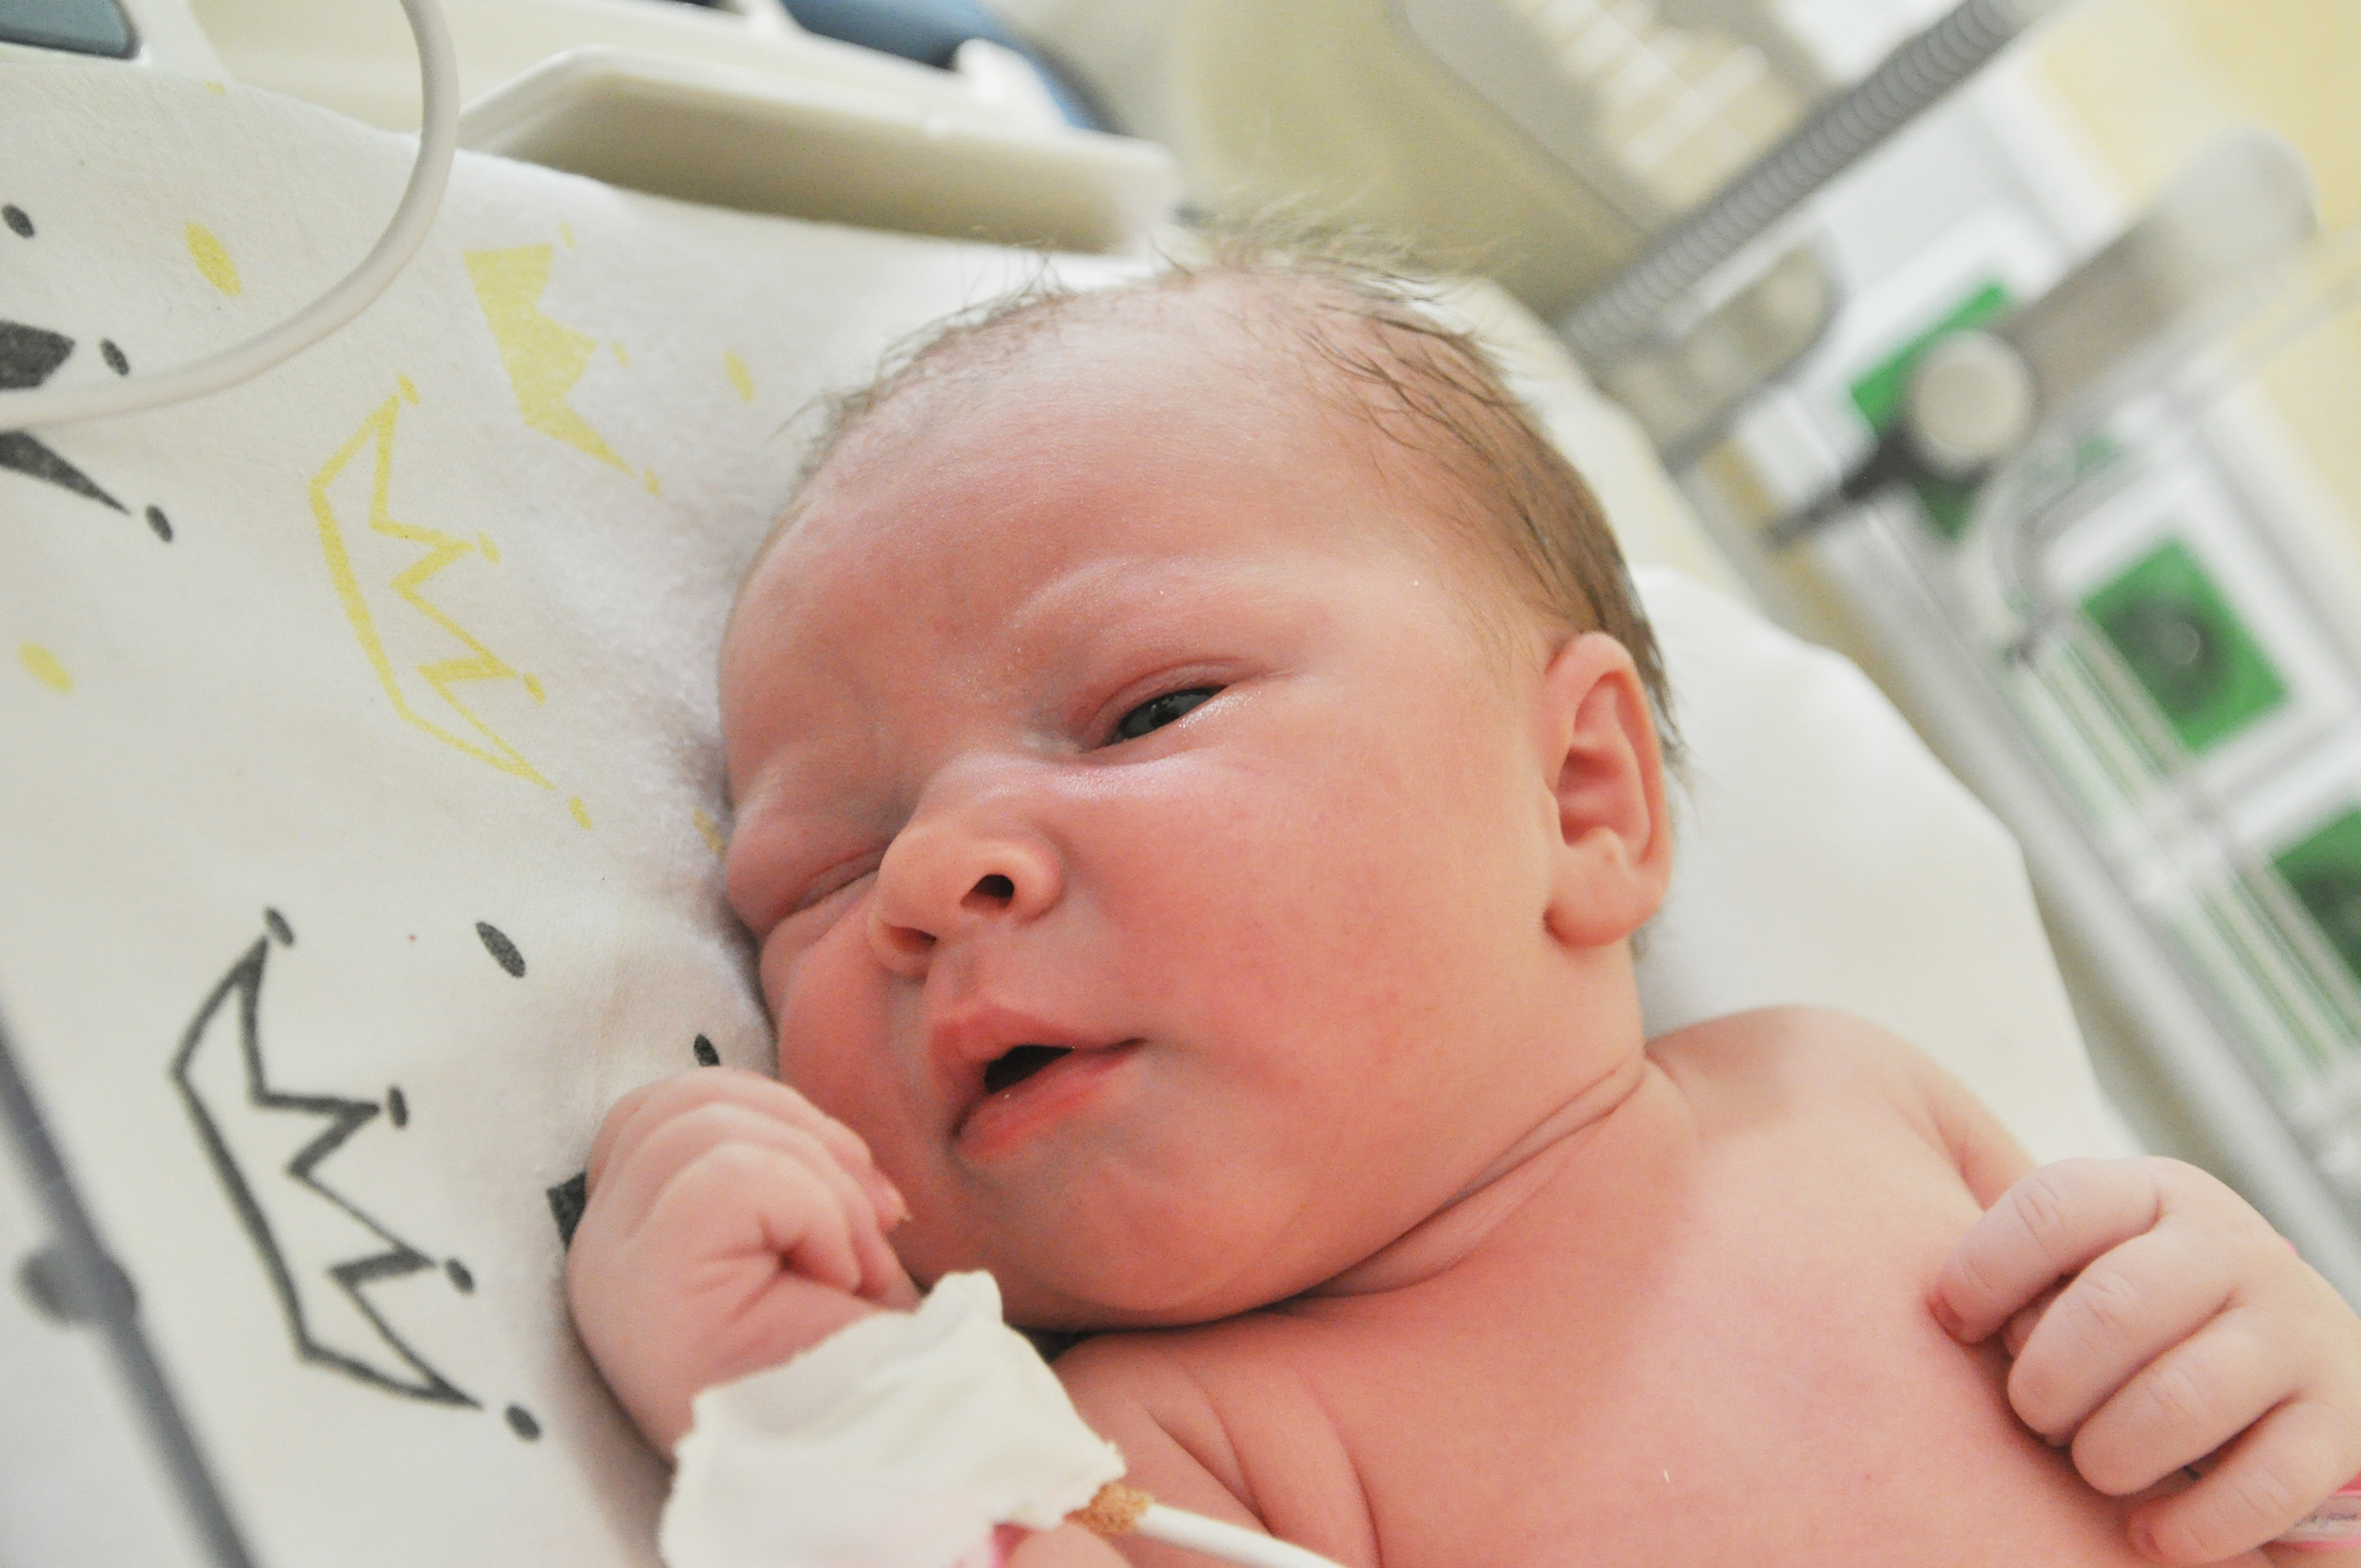 Victoria Hume to córeczka Sylwi i Dawida z Raciborza. Urodziła się 22 maja o 14.01. Ważyła 3700 g i mierzyła 58 cm. Dziewczynka ma brata Alana.